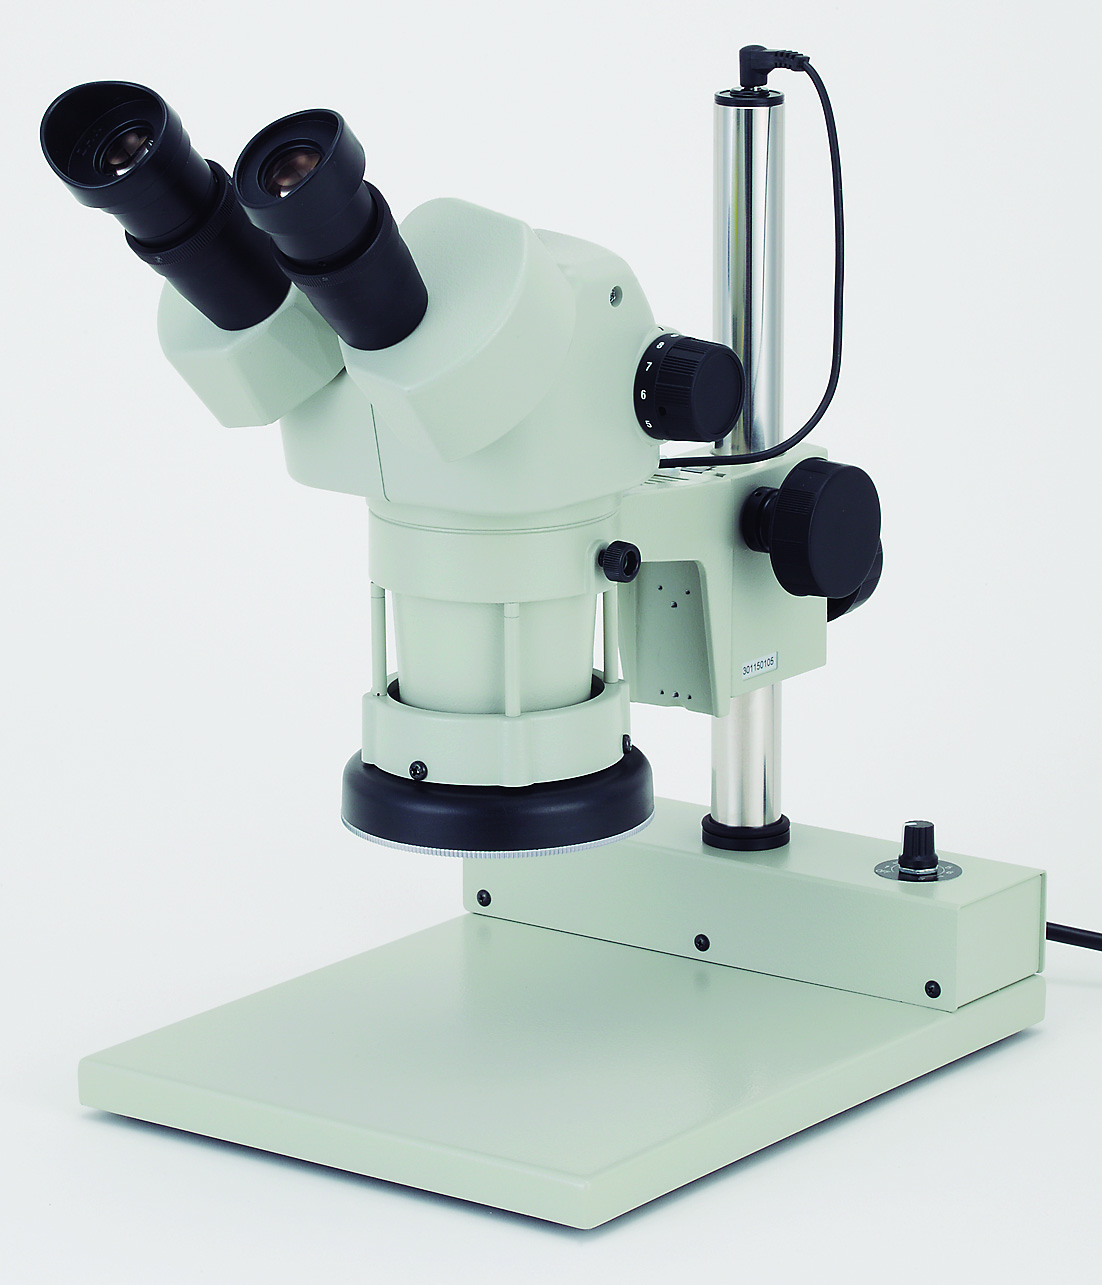 カートン光学 ズームシステム実体顕微鏡<双眼式> 落射白色LED調光照明付